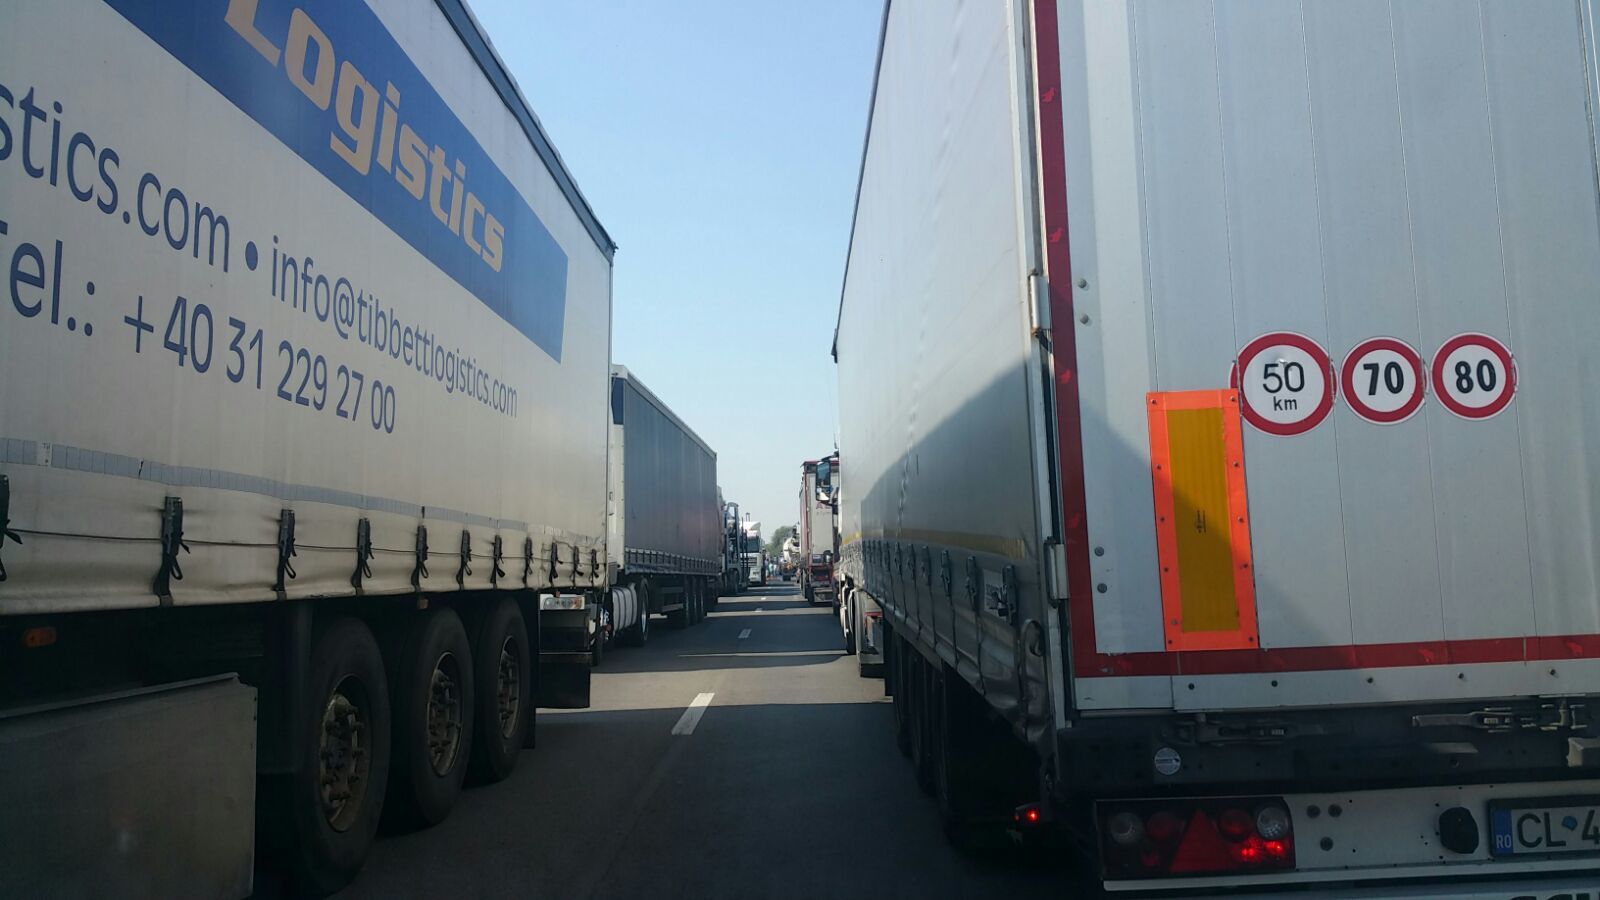 Atenţionare de călătorie transmisă de MAE – Restricţii de circulaţie pentru camioanele de mare tonaj, peste 7,5 tone, în Ungaria / Care sunt excepţiile